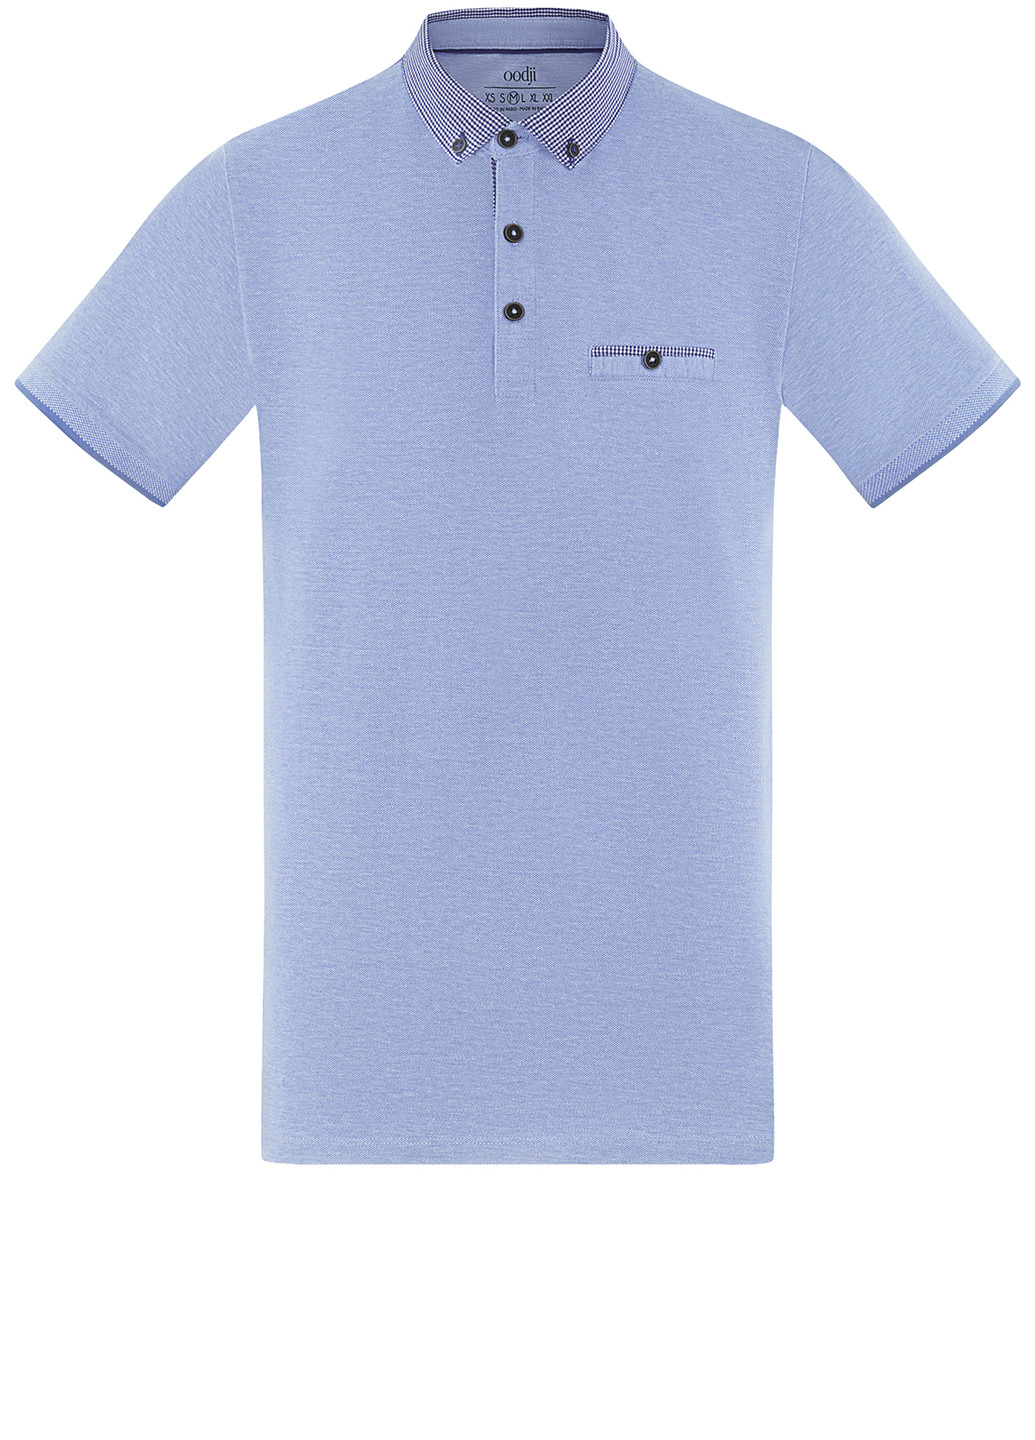 Темно-голубой футболка-поло для мужчин Oodji меланжевая